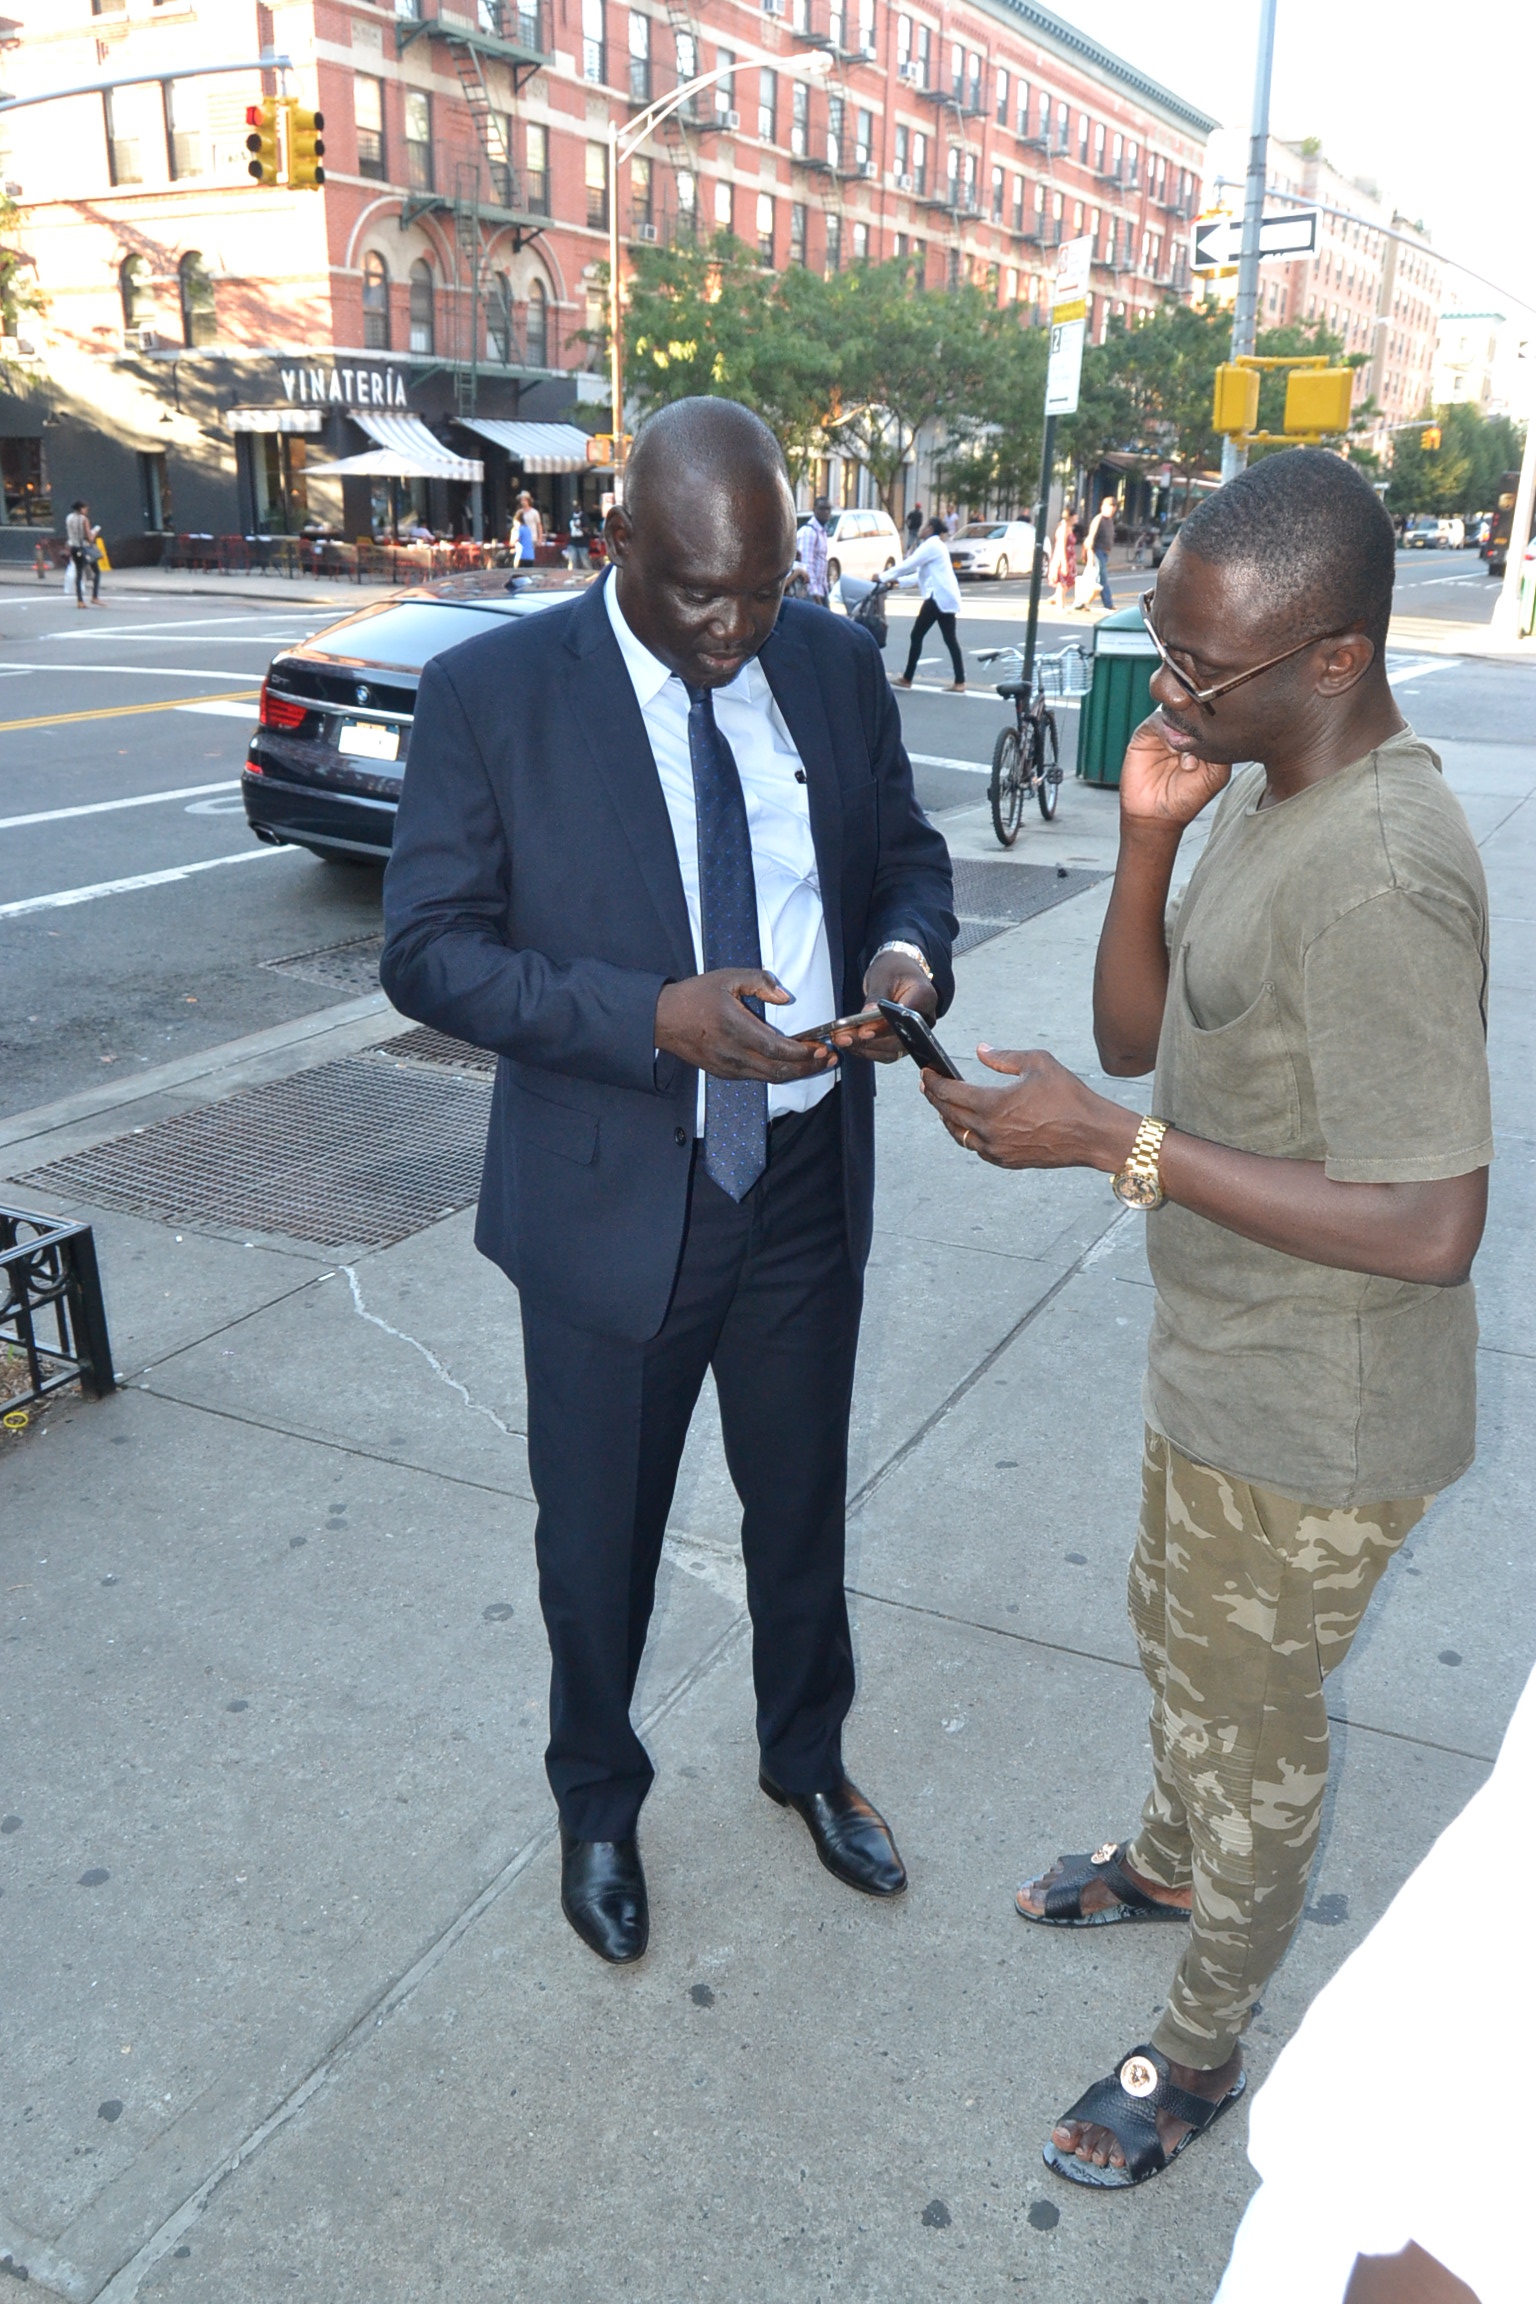 Armine Mbacké en pleine discussion avec Pape Diouf dans les rues de New York